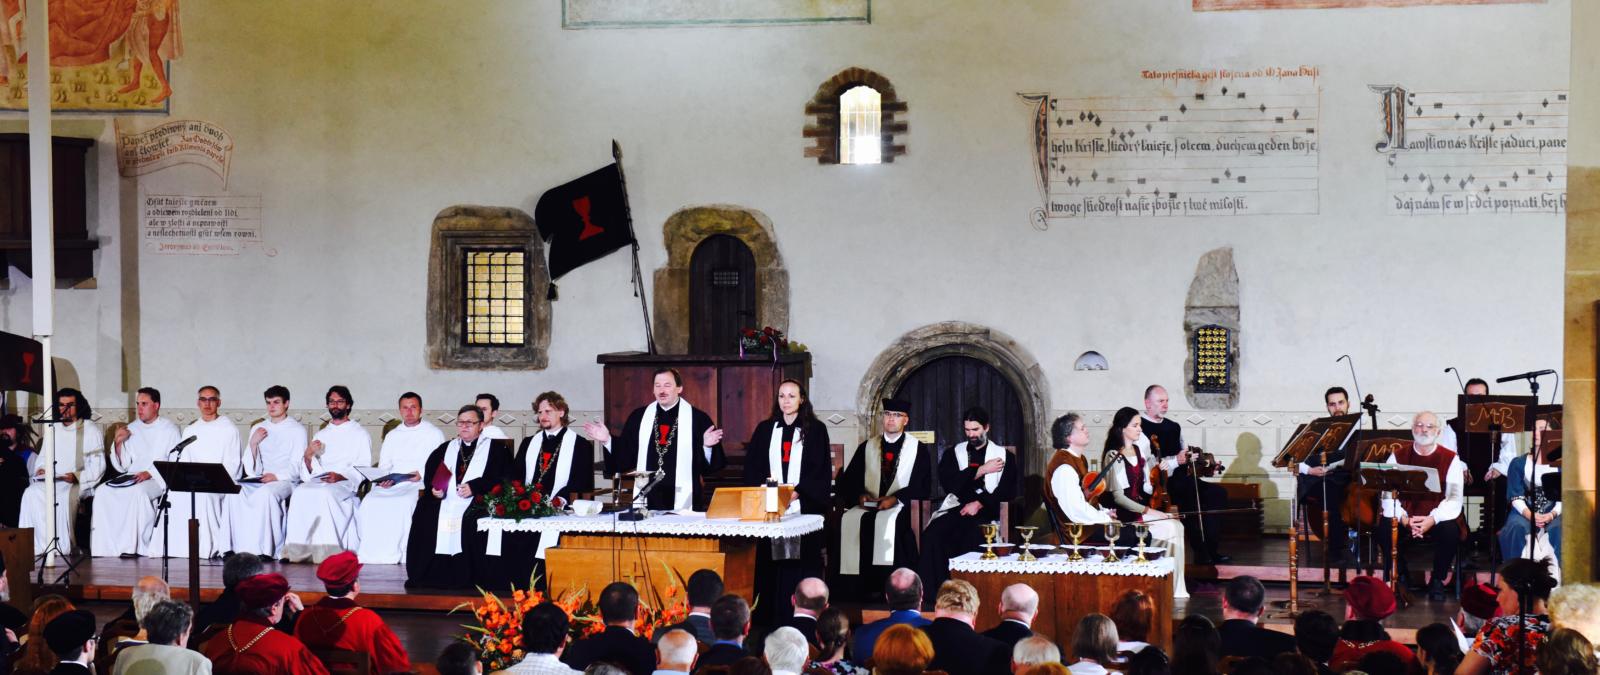 nabożeństwo w Kaplicy Betlejemskiej w Pradze w 600. rocznicę spalenia ks. Jana Husa